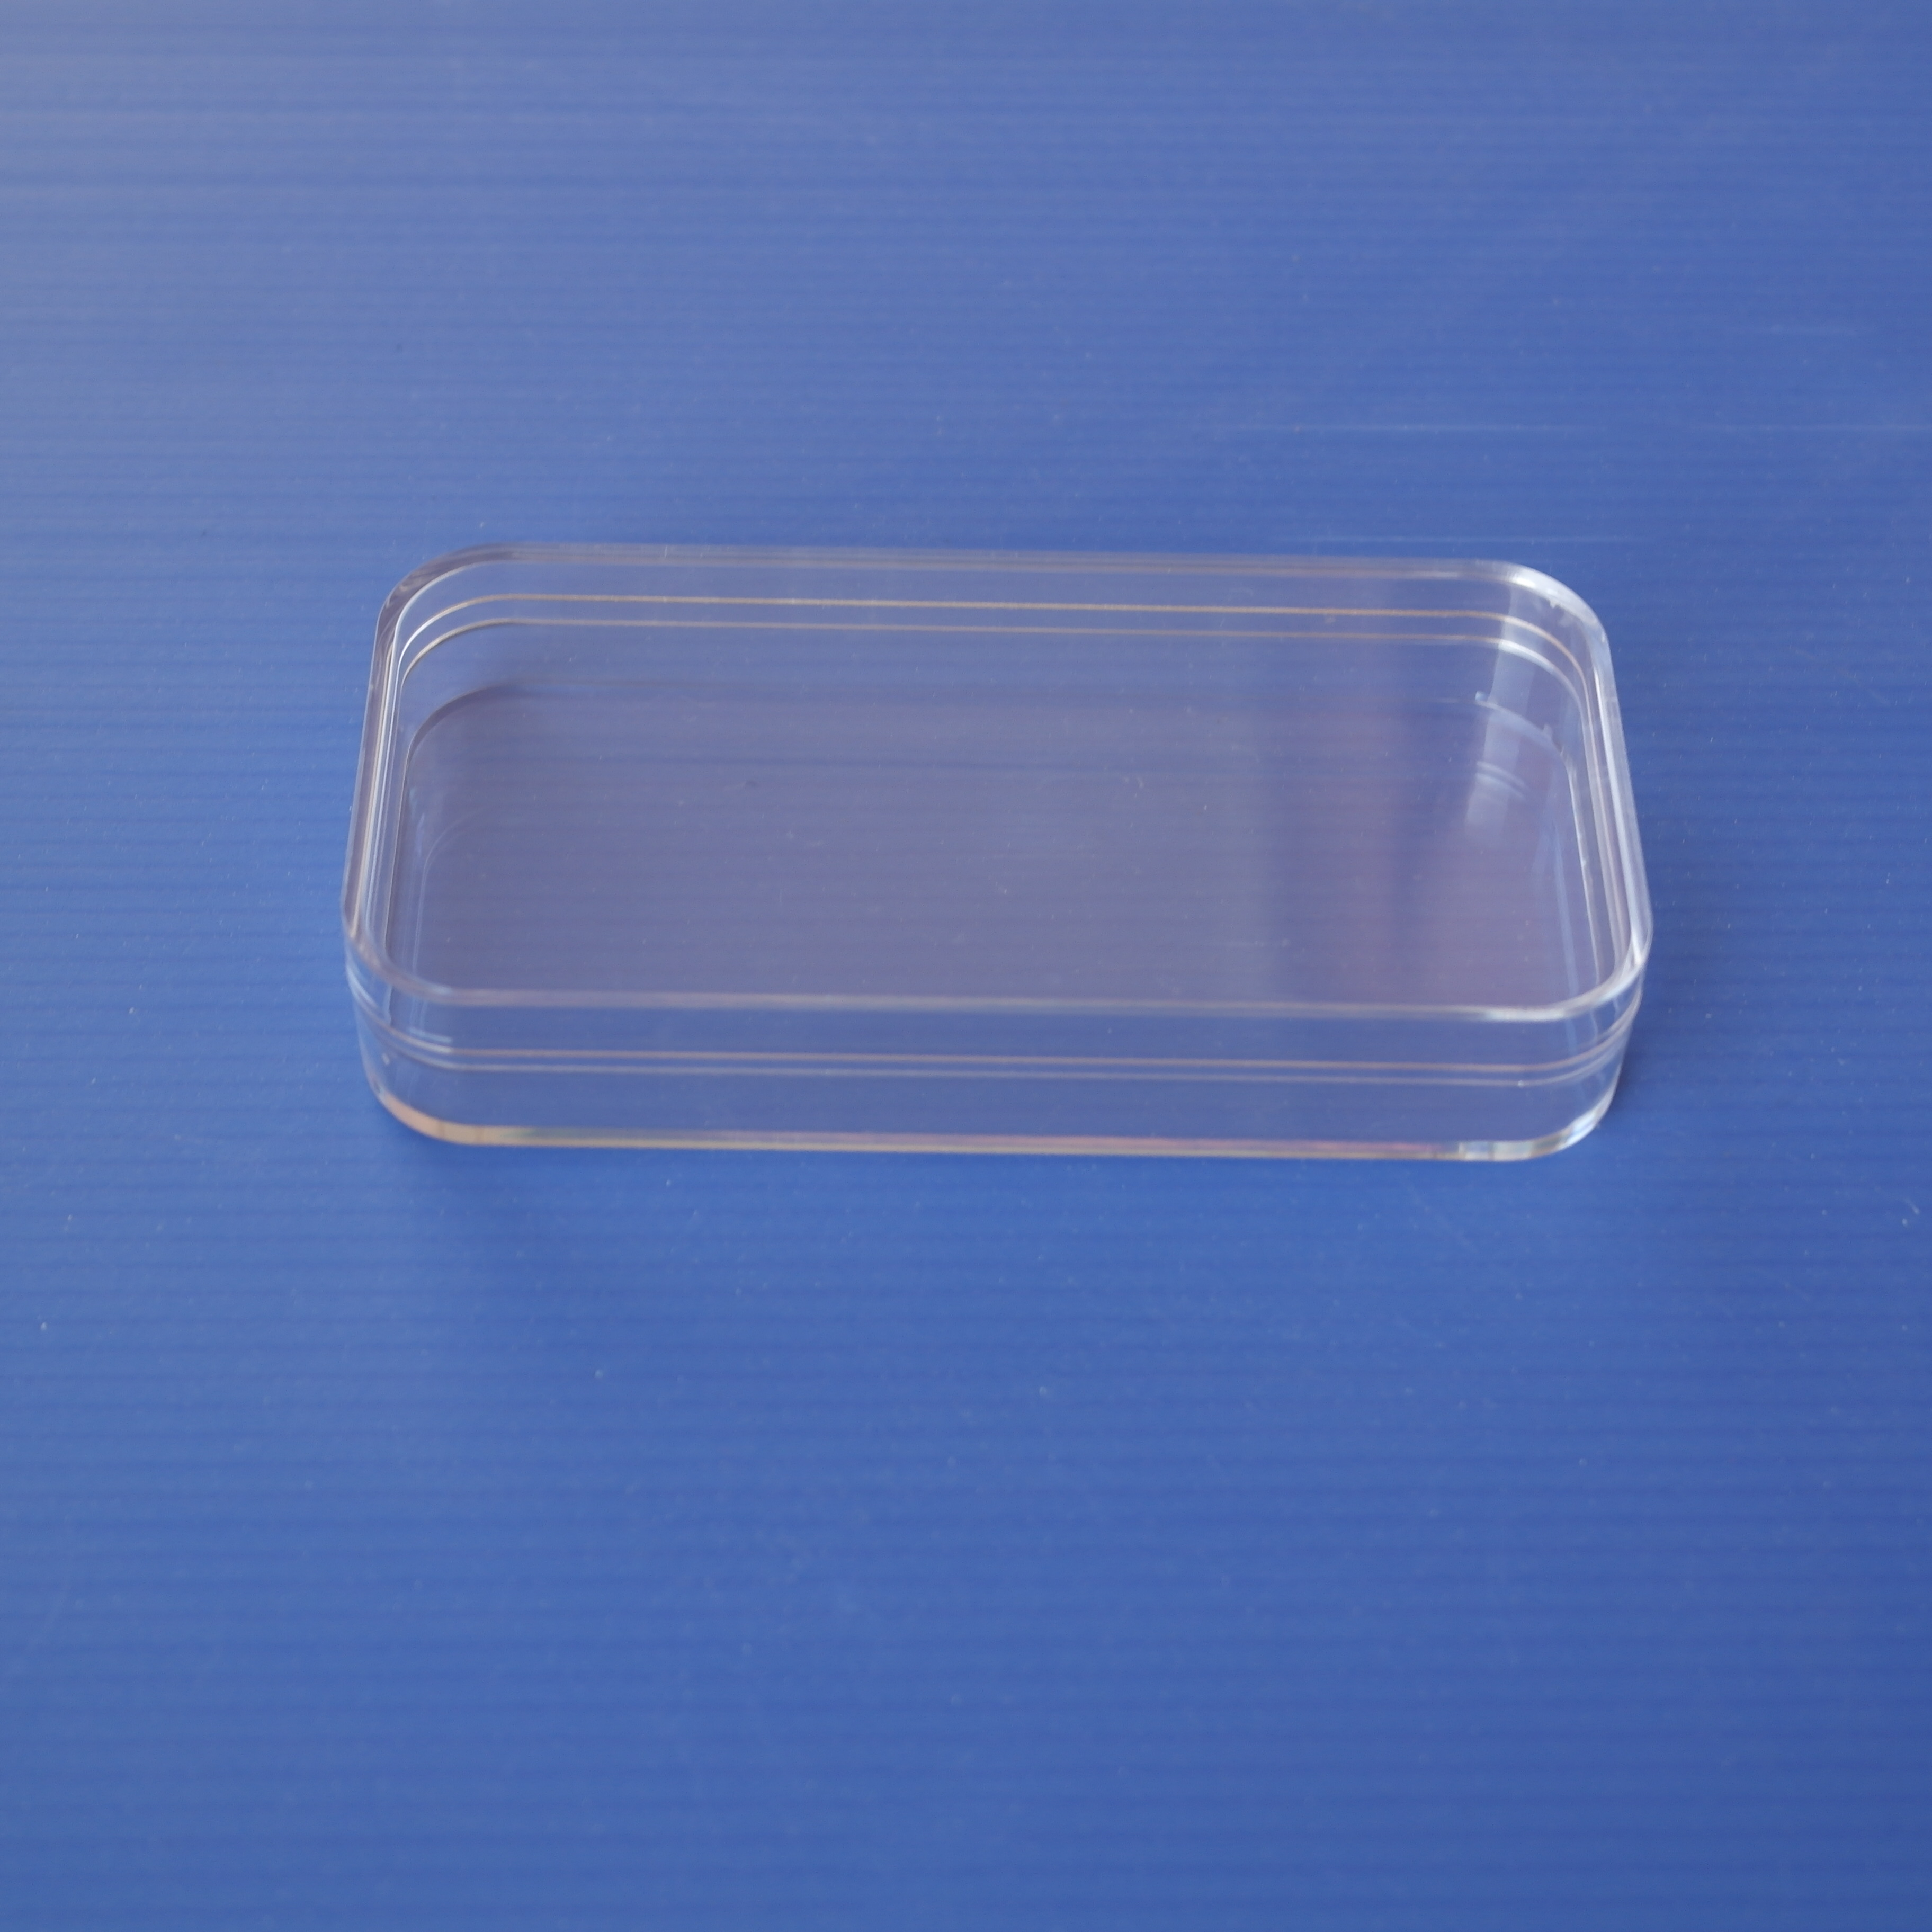 电子烟水晶盒厂家批发 透明塑胶盒厂家直销